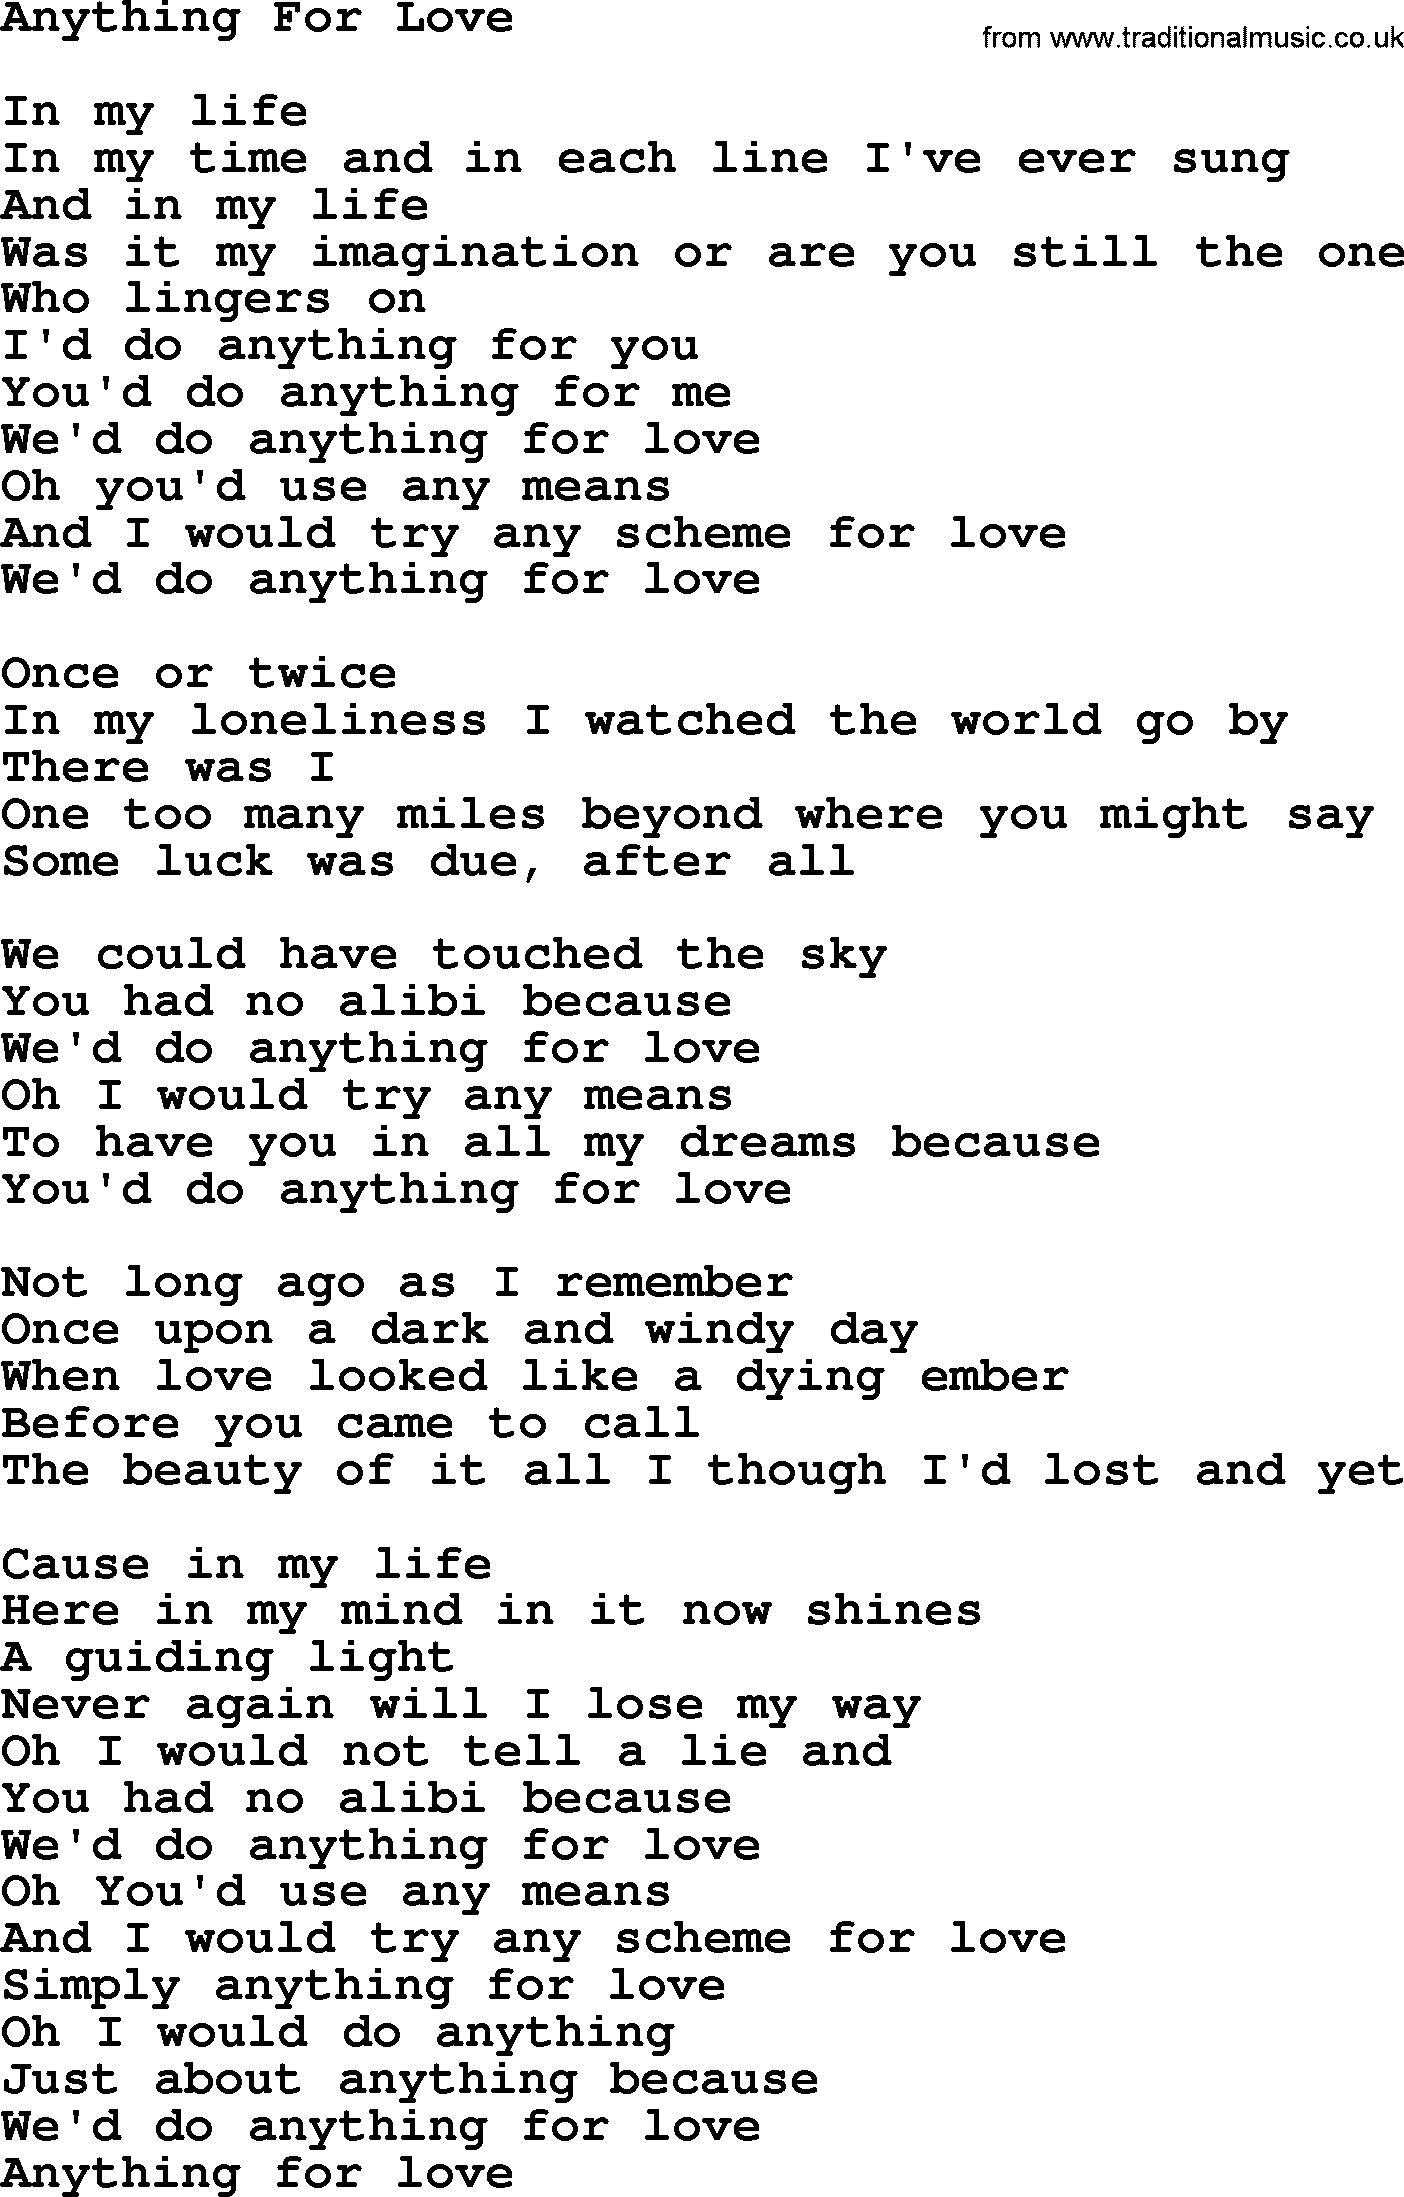 Gordon Lightfoot song Anything For Love, lyrics